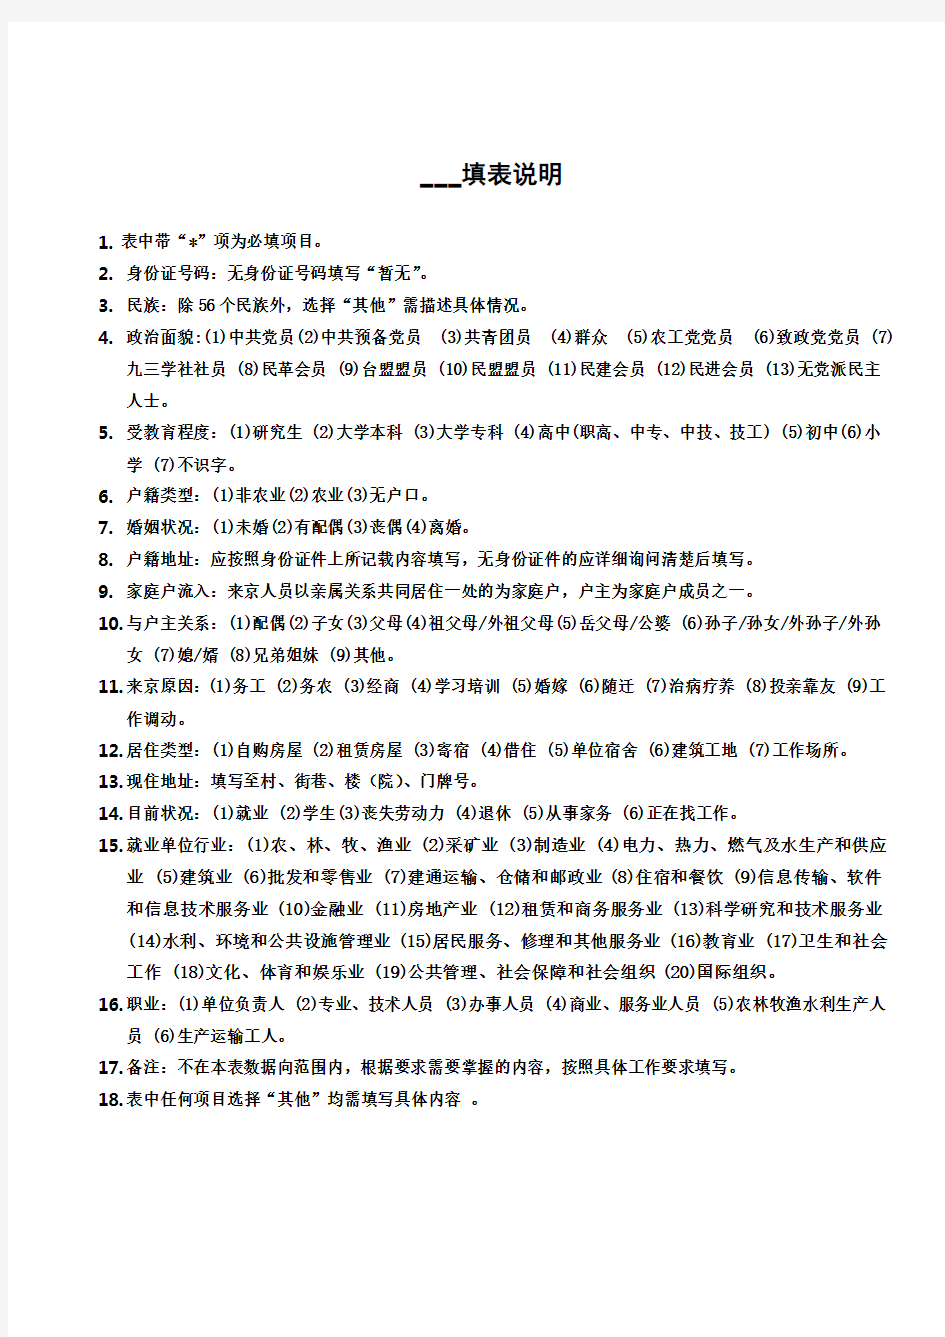 北京市2018年居住人口登记表,居住证,居住卡